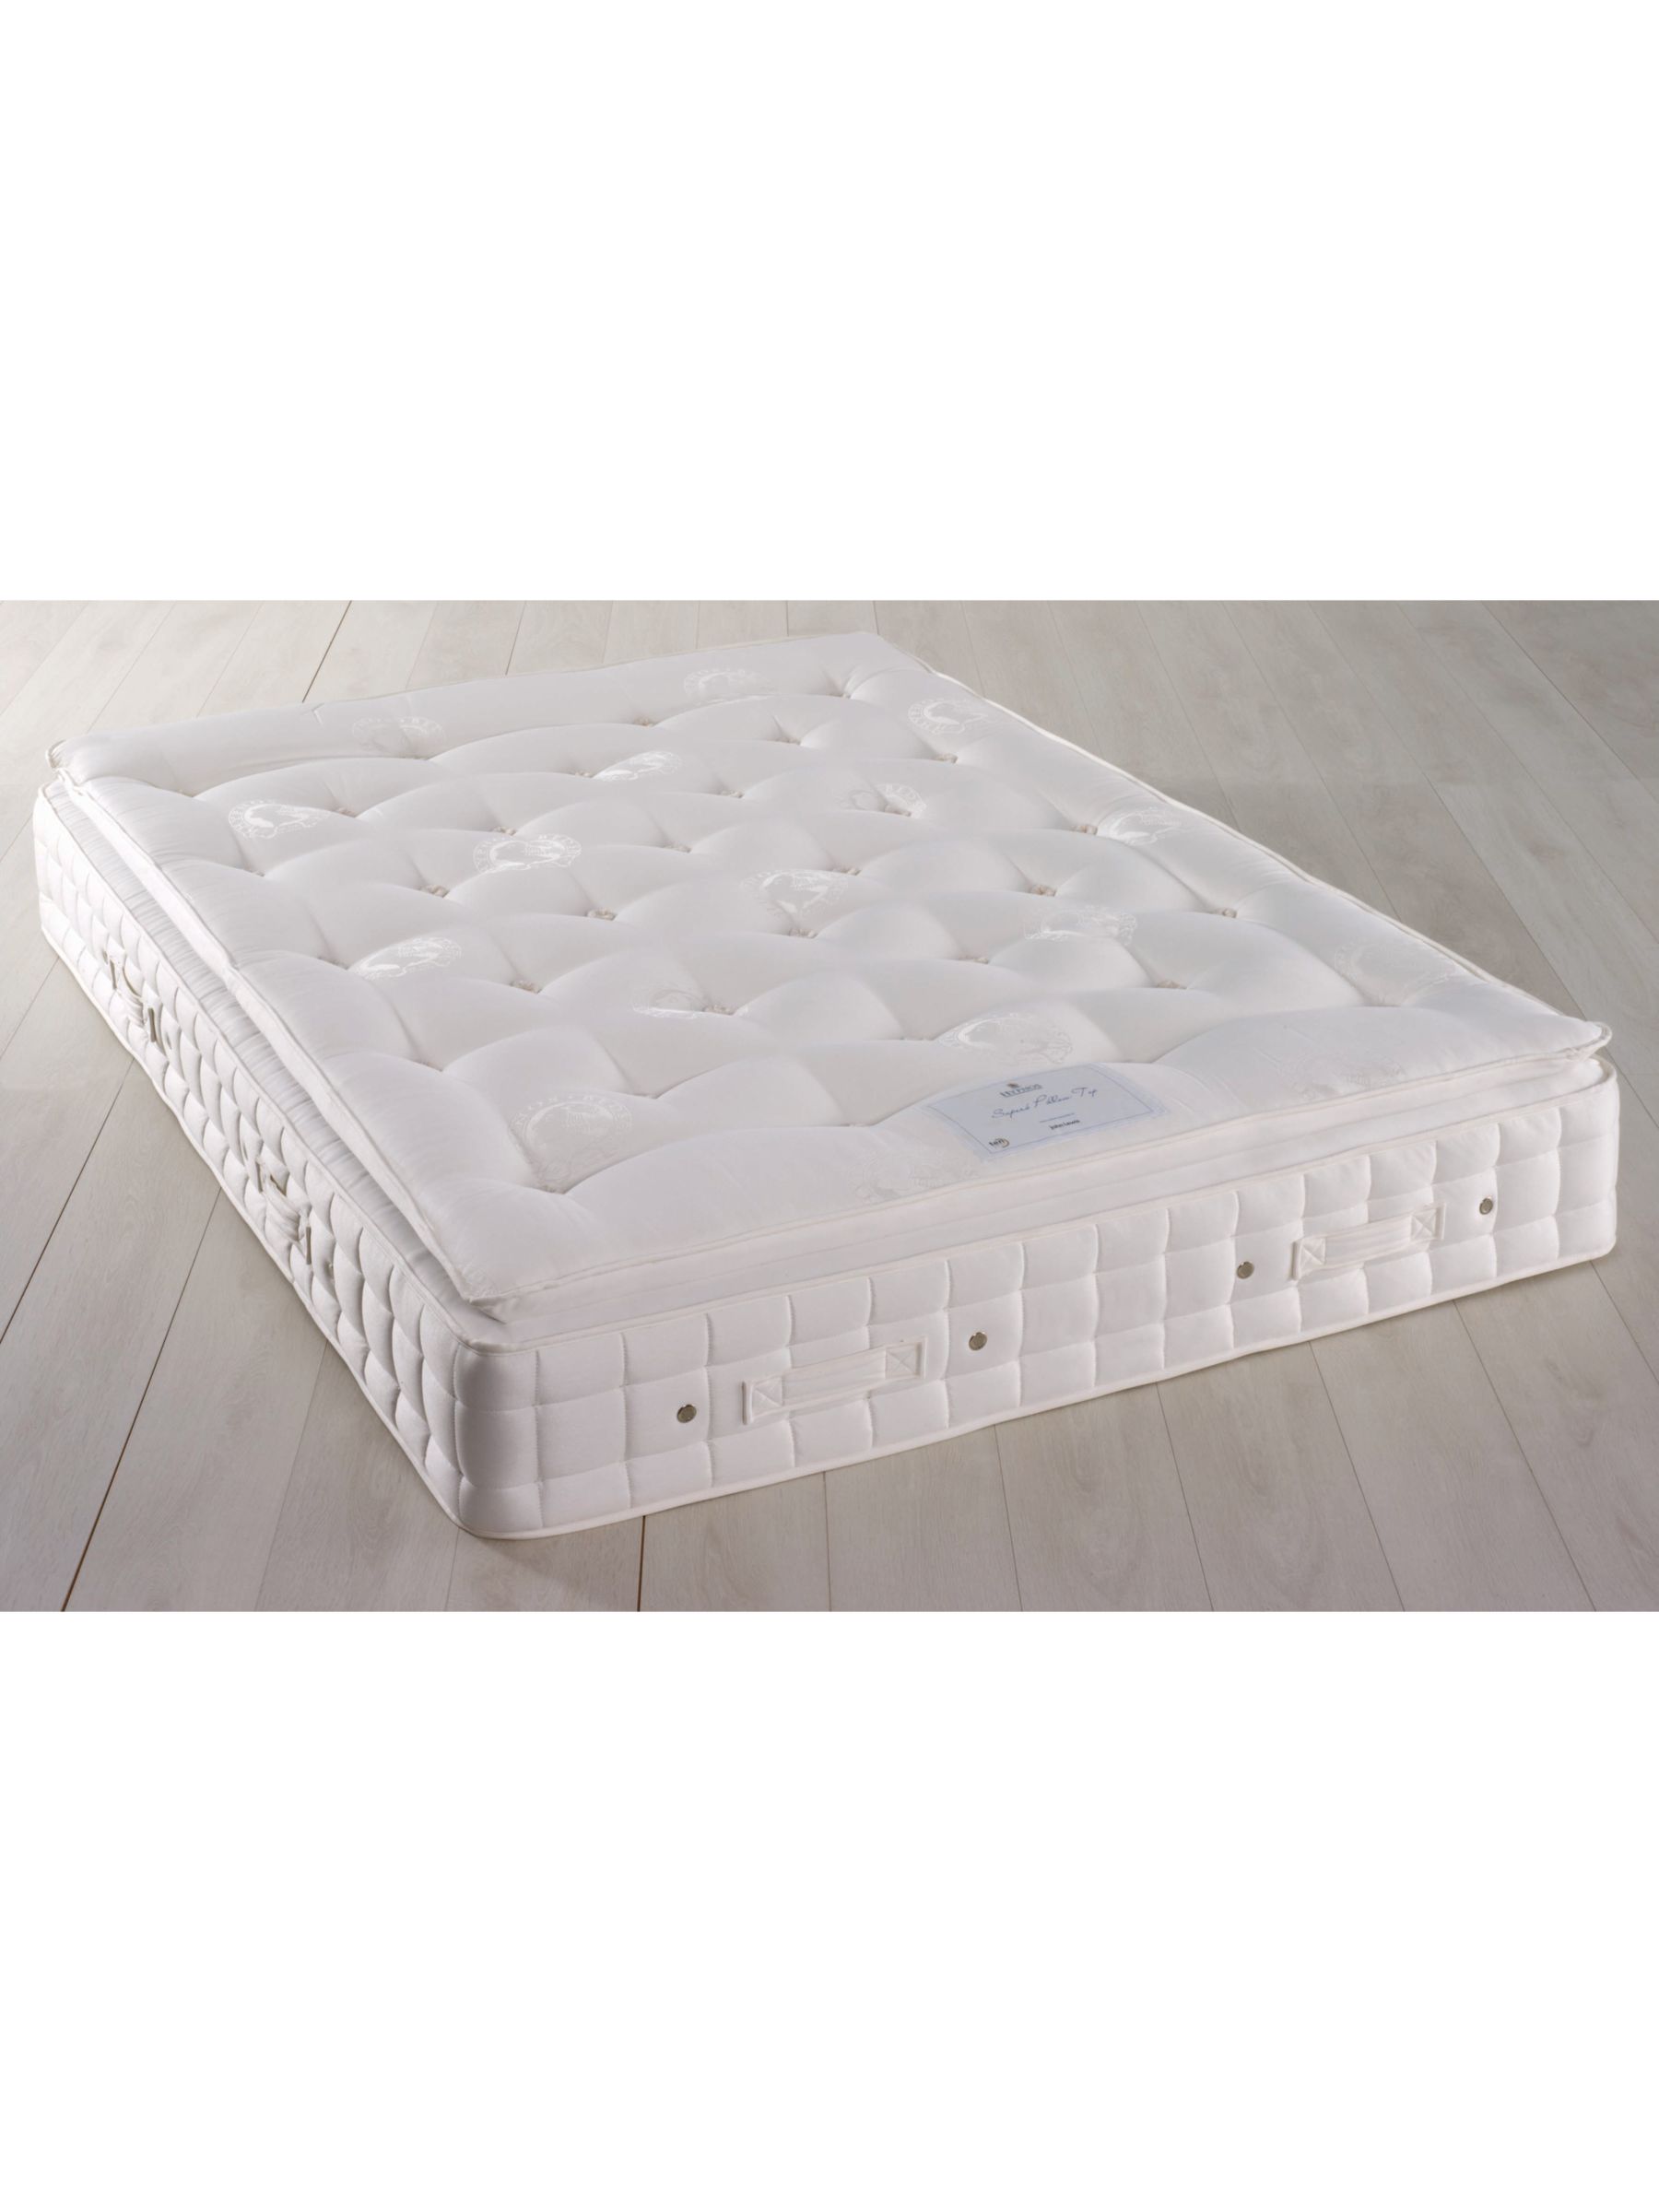 hypnos pillow top mattress